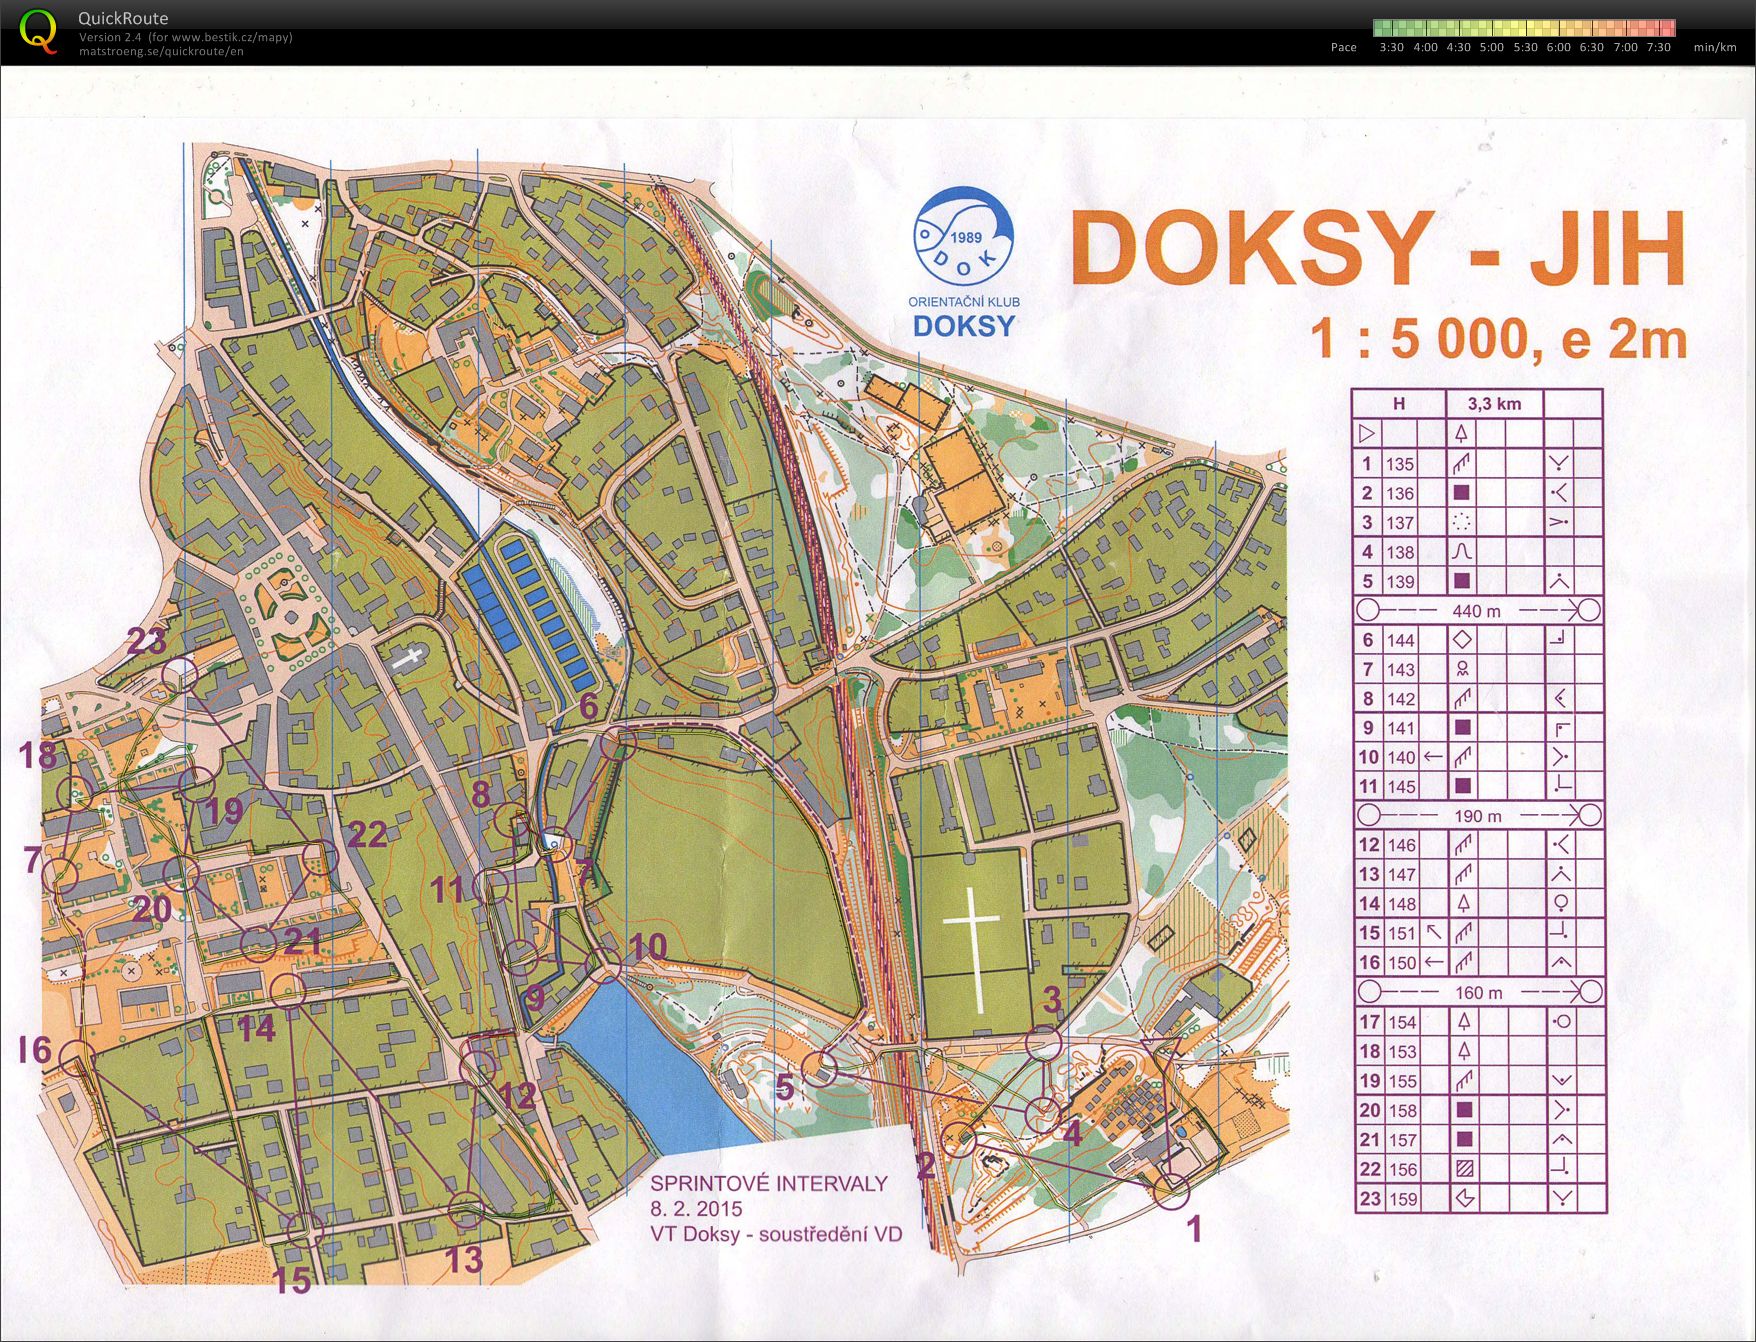 VD Doksy sprint. intervaly (08-02-2015)